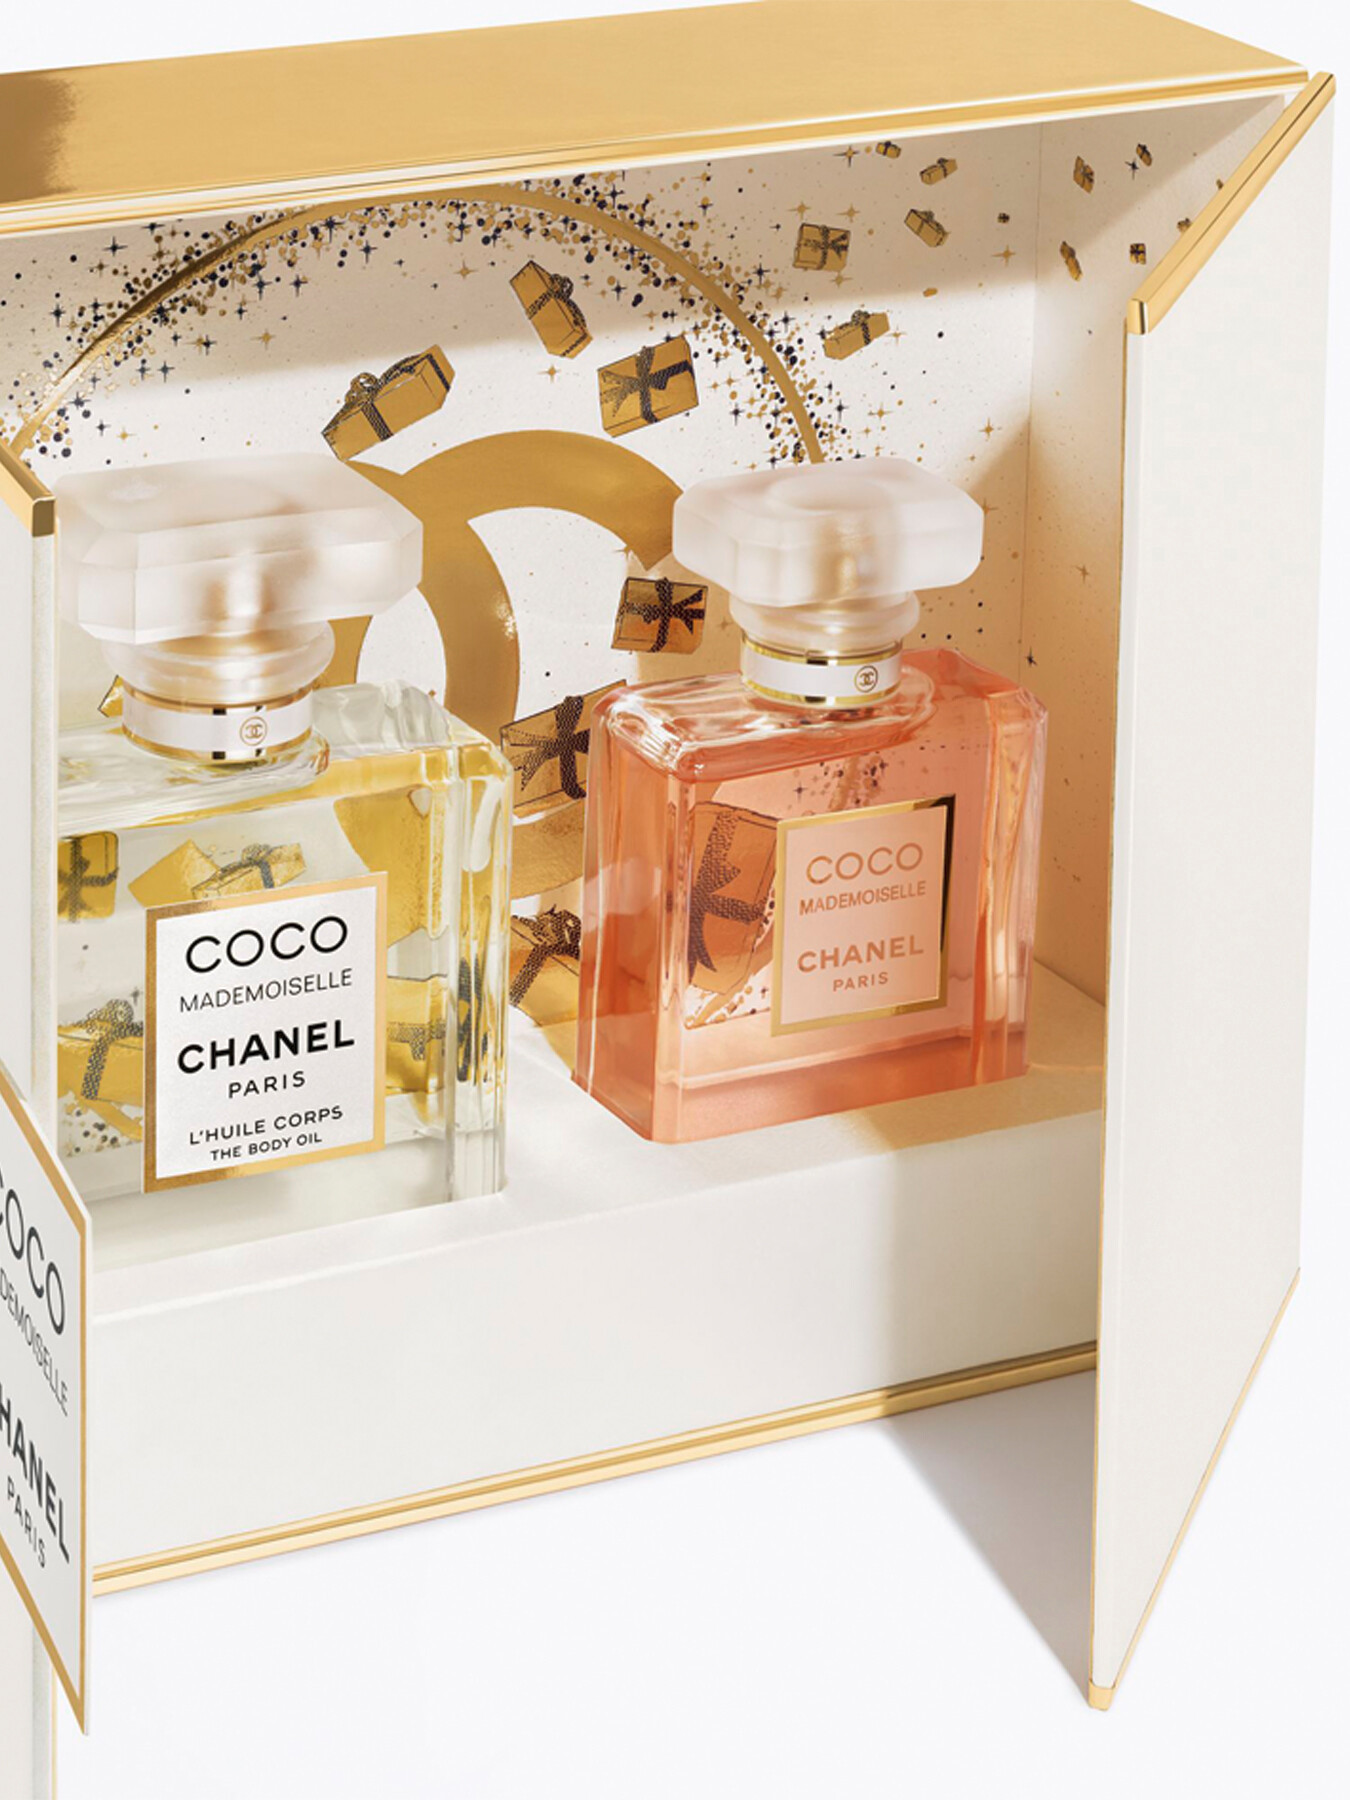 Chanel Coco Mademoiselle - Body Oil, Shower Gel, Body Lotion, Foam